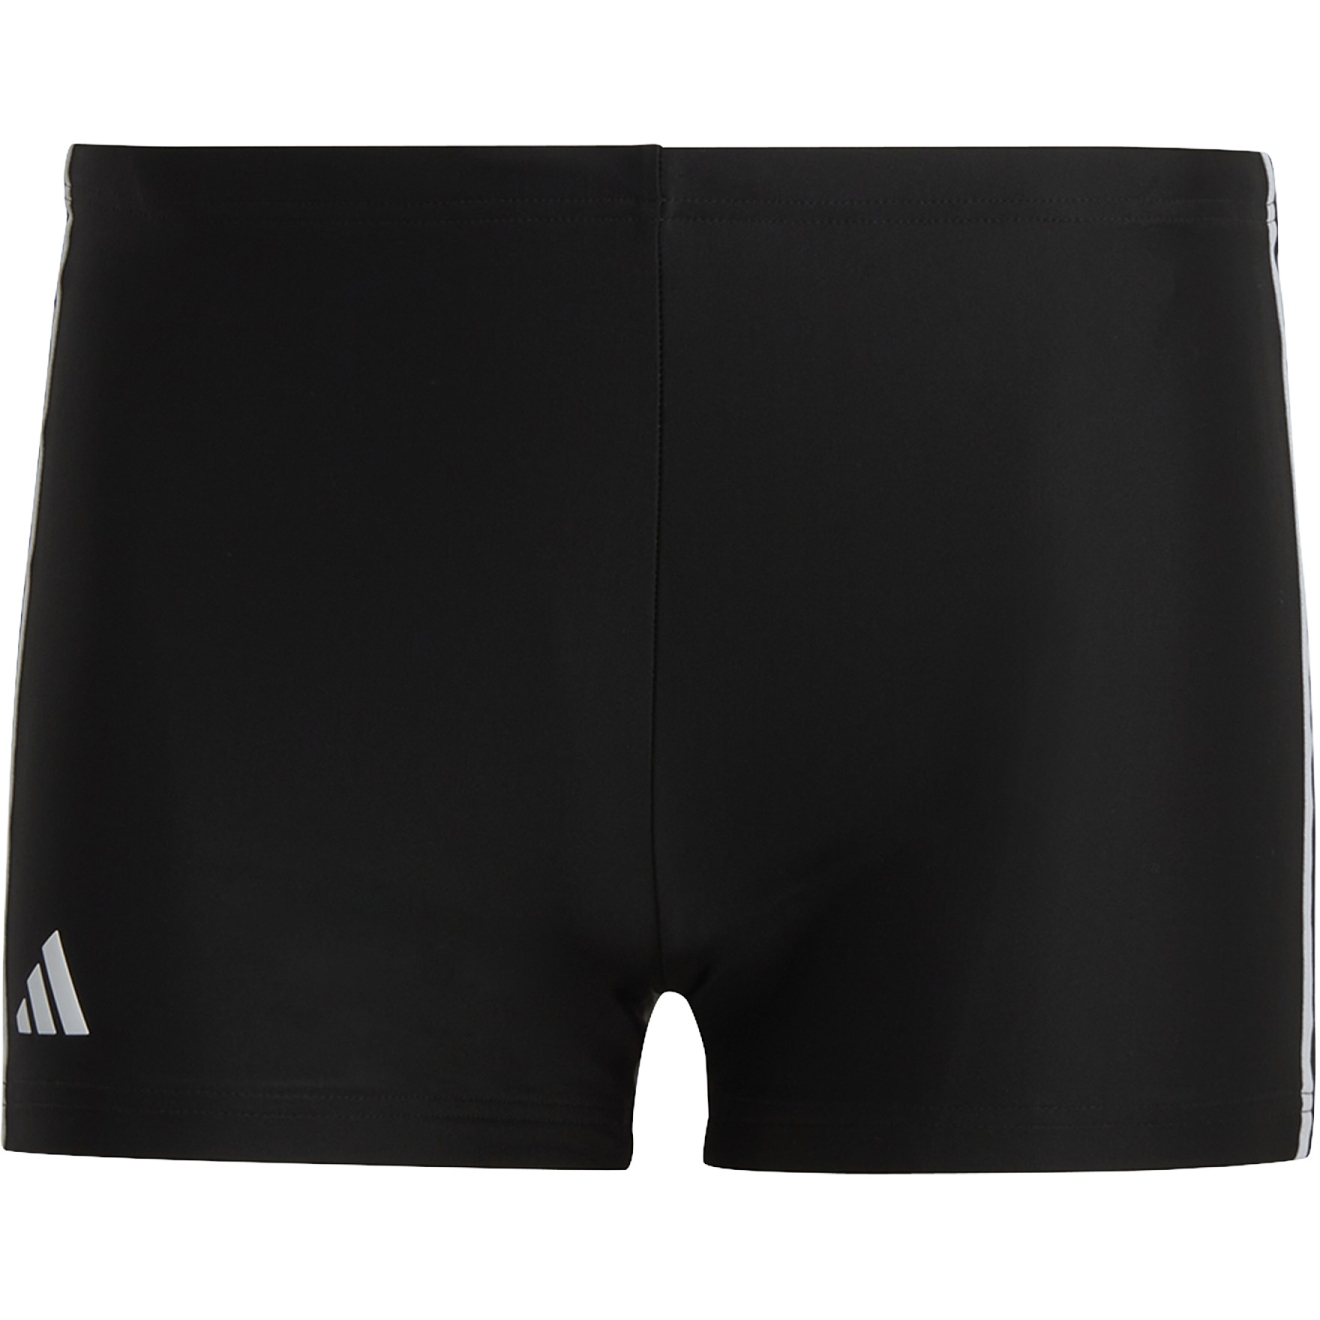 Produktbild von adidas Männer Classic 3-Streifen Boxer-Badehose - schwarz/weiß HT2073